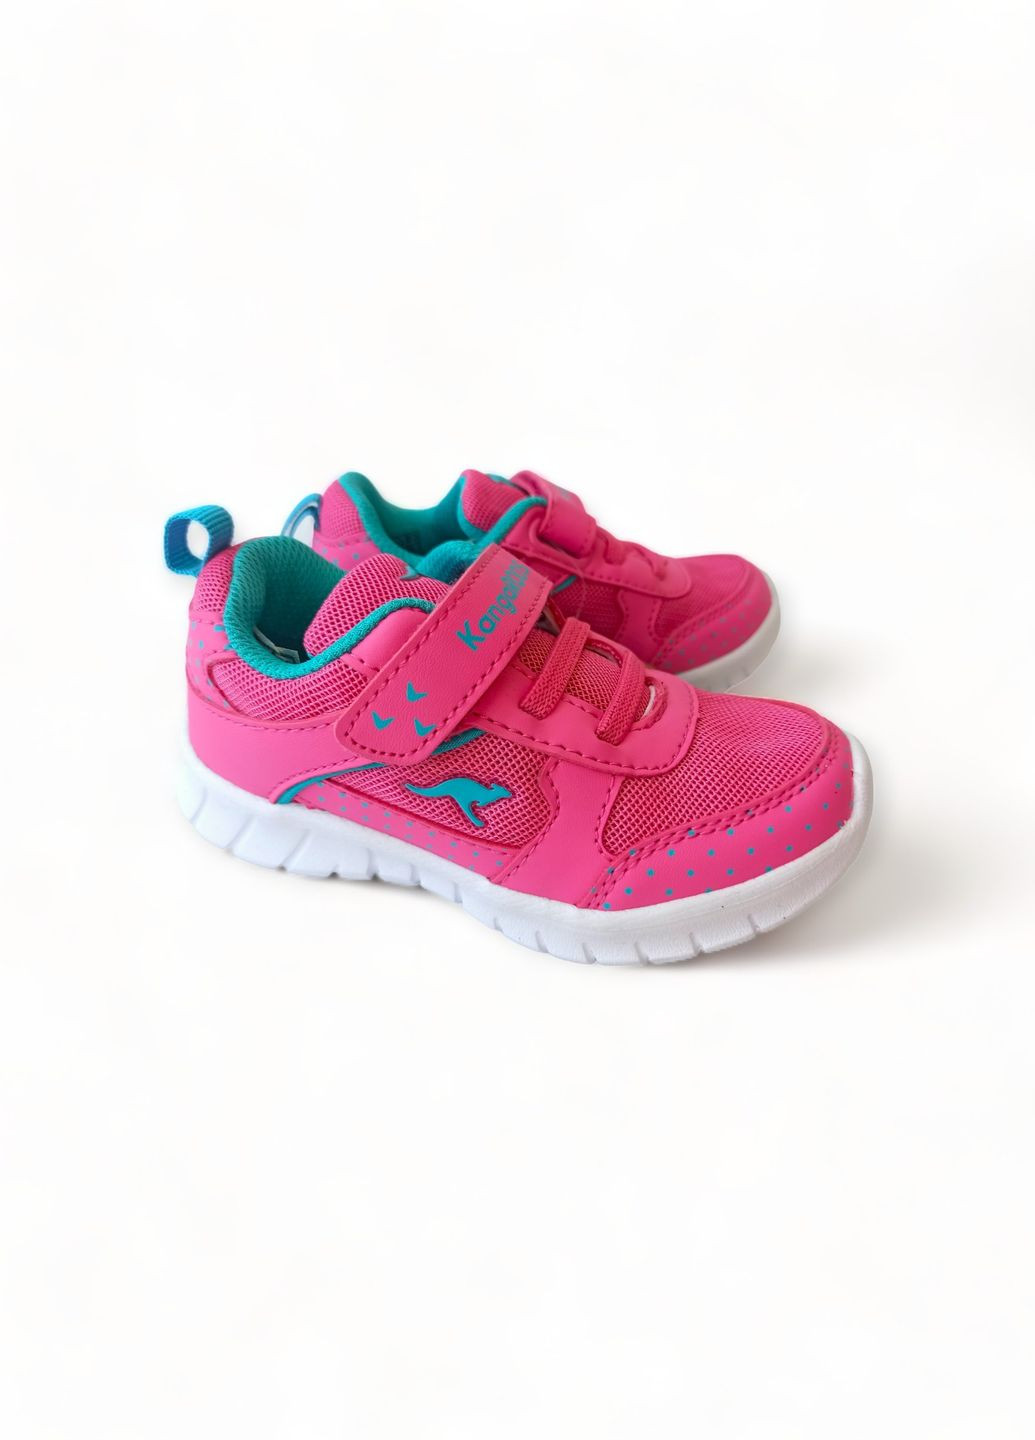 Рожеві всесезонні кросівки дитячі для дівчинки 02036/6056 рожеві (26) Kangaroos